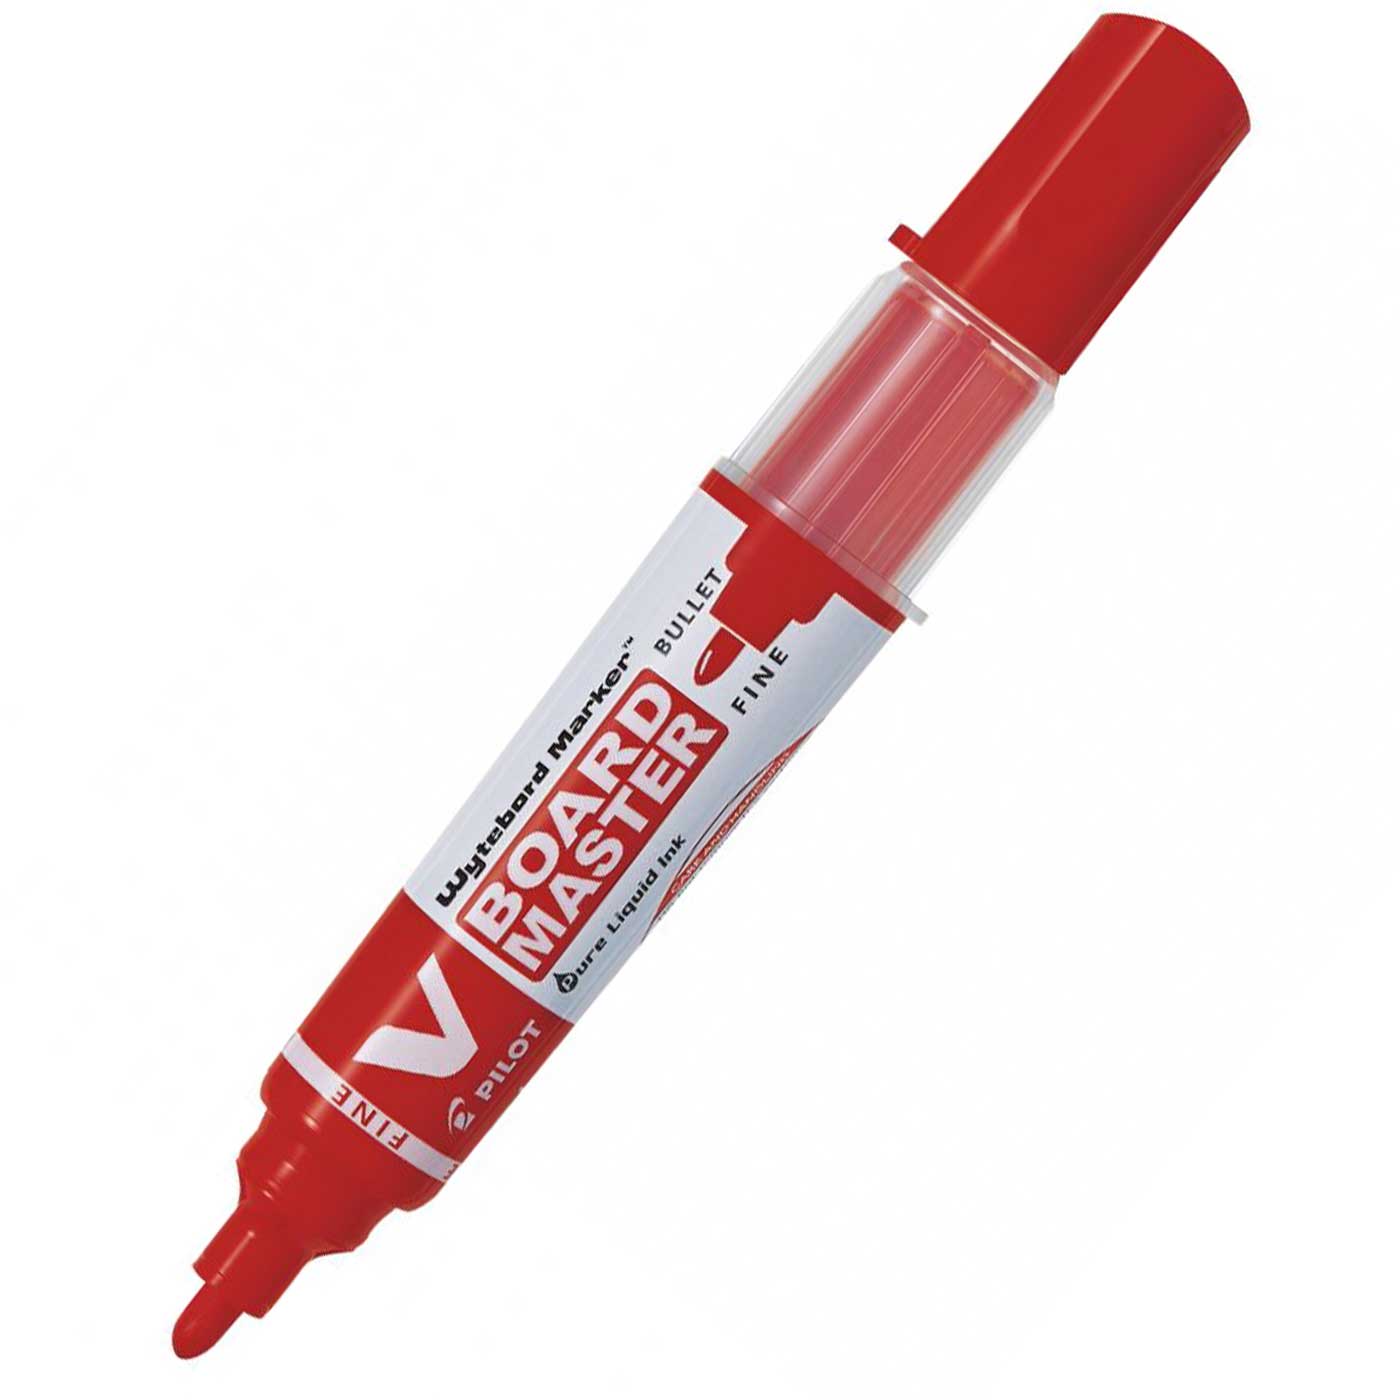 Pilot Whiteboard Marker Refillable V Board Bullet Tip Red